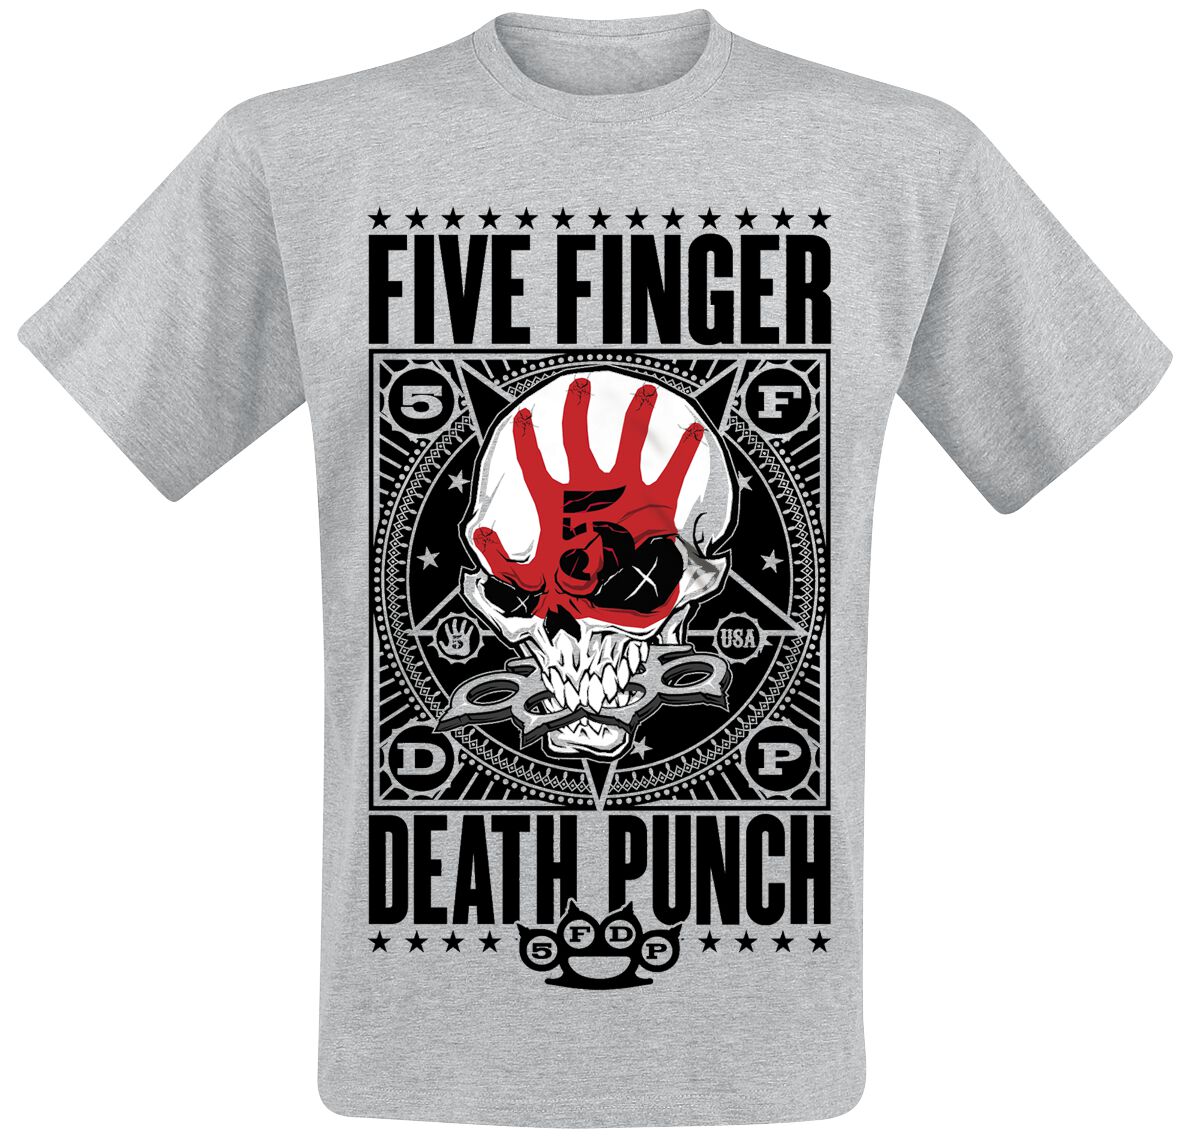 Five Finger Death Punch T-Shirt - Punchagram - M bis XXL - für Männer - Größe XXL - grau meliert  - EMP exklusives Merchandise!